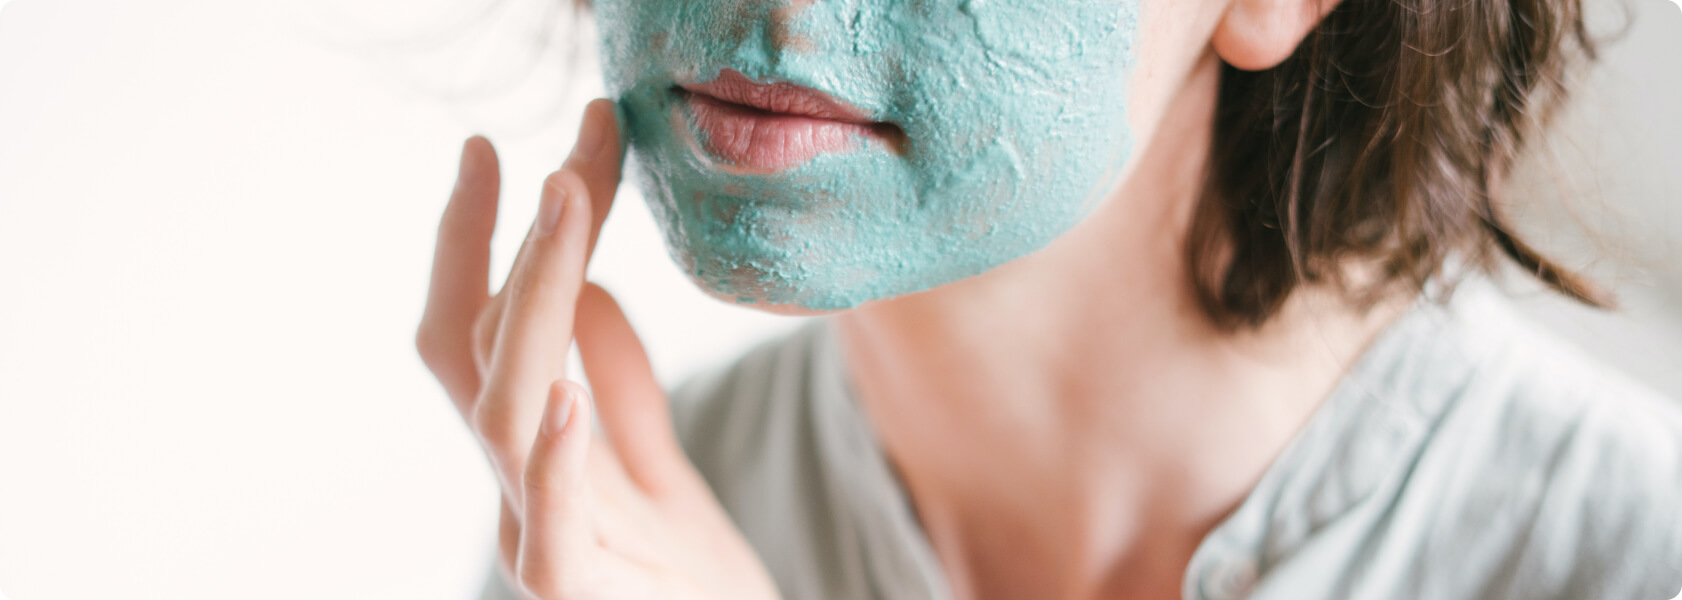 Hilfe: Unreine Haut durch Mund-Nasen-Schutz! - Trage Hautpflege Produkte wie Cremes nur dünn